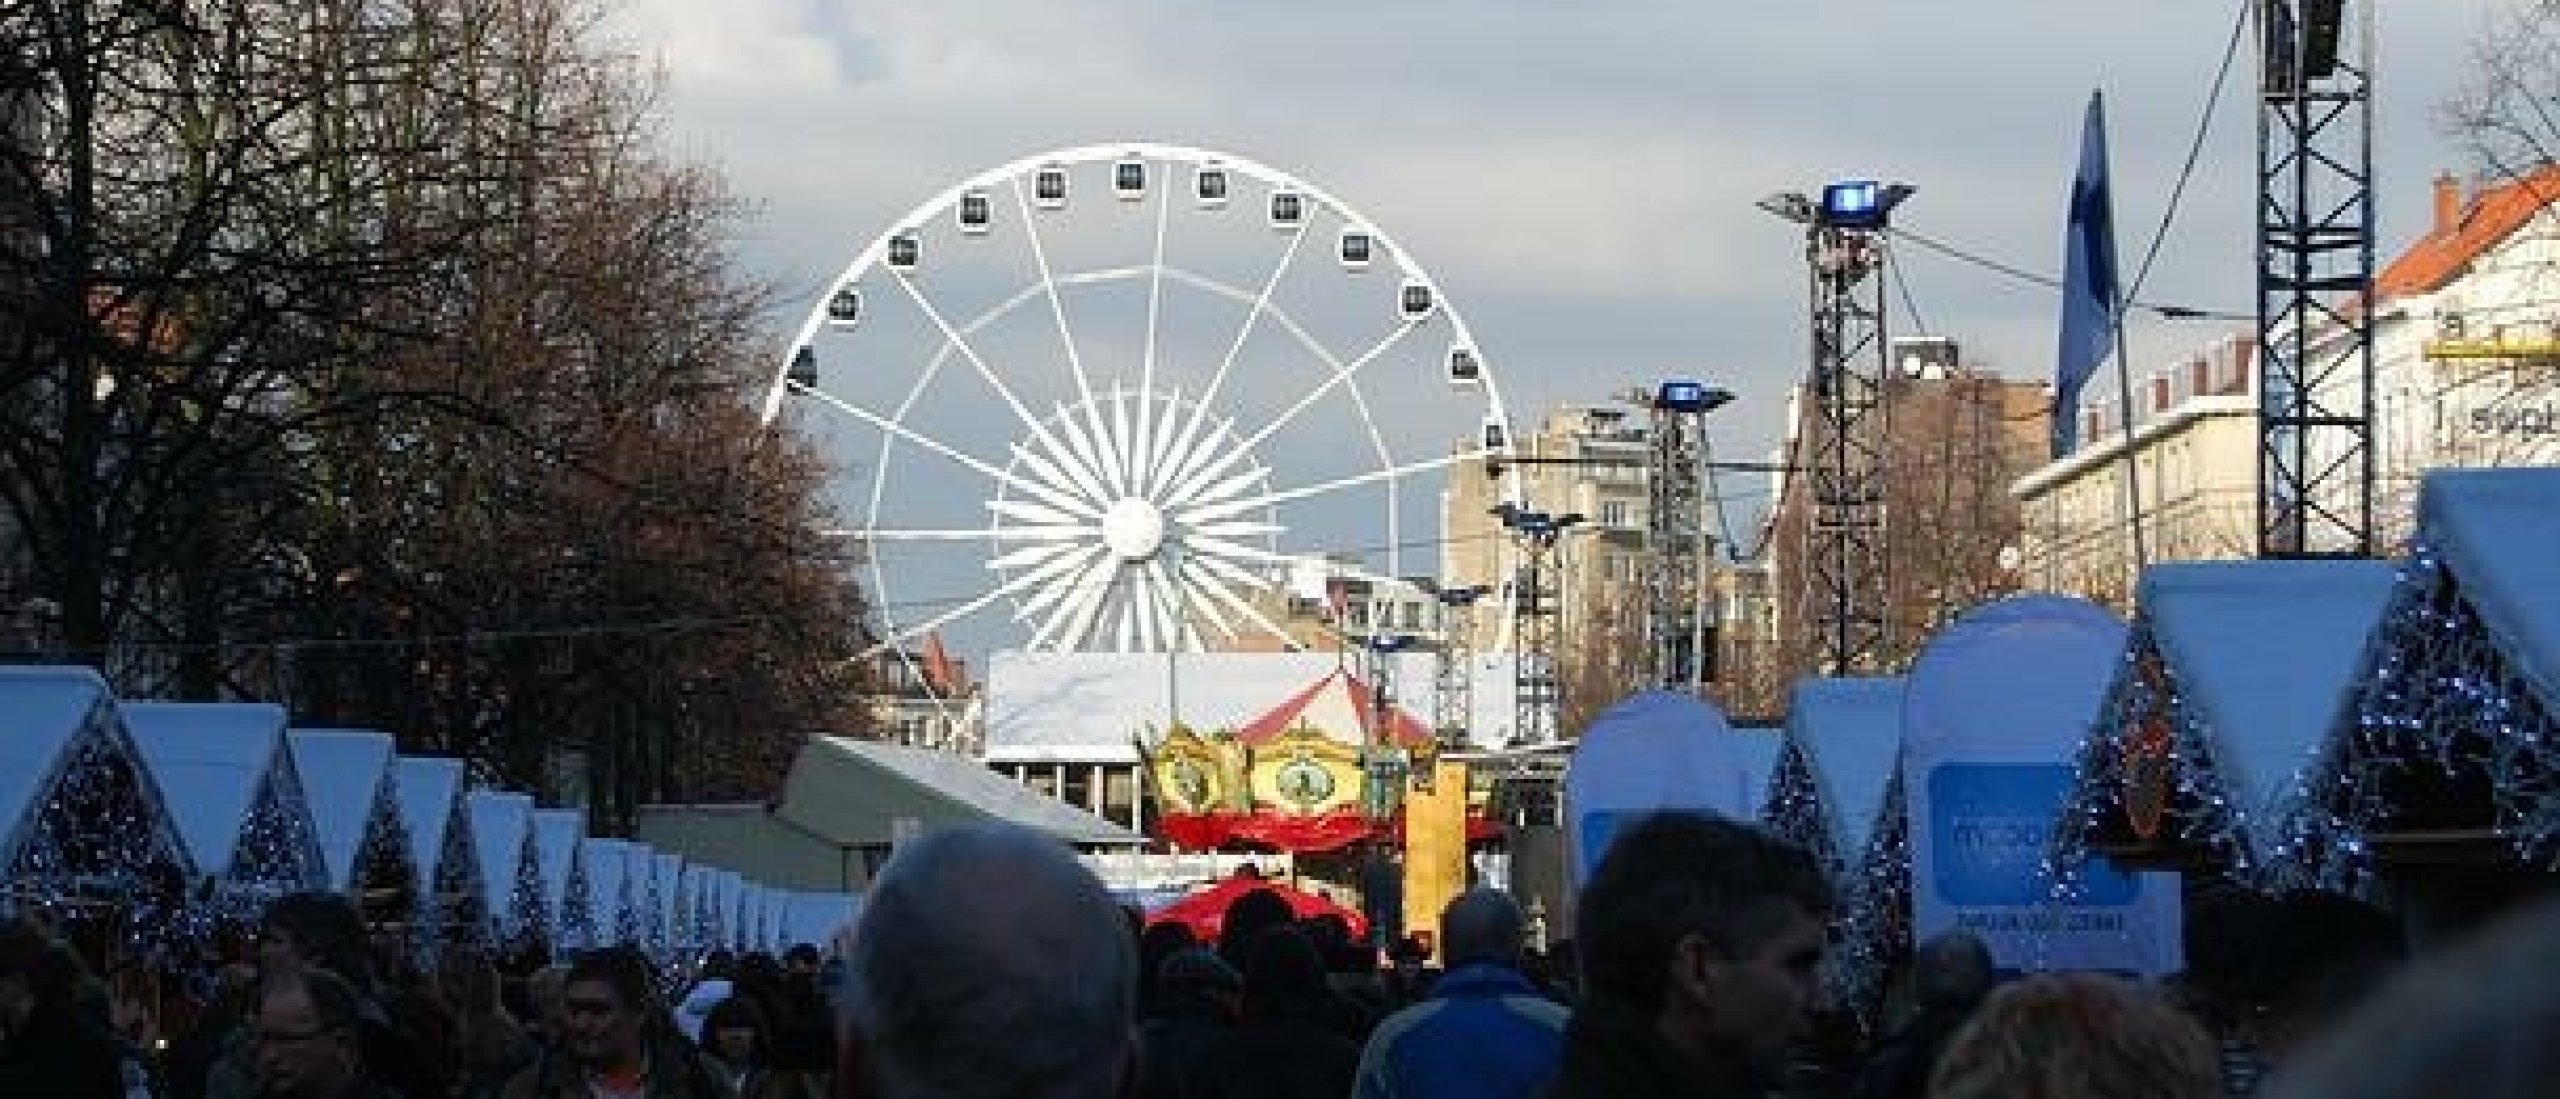 Brussel Kerstmarkt